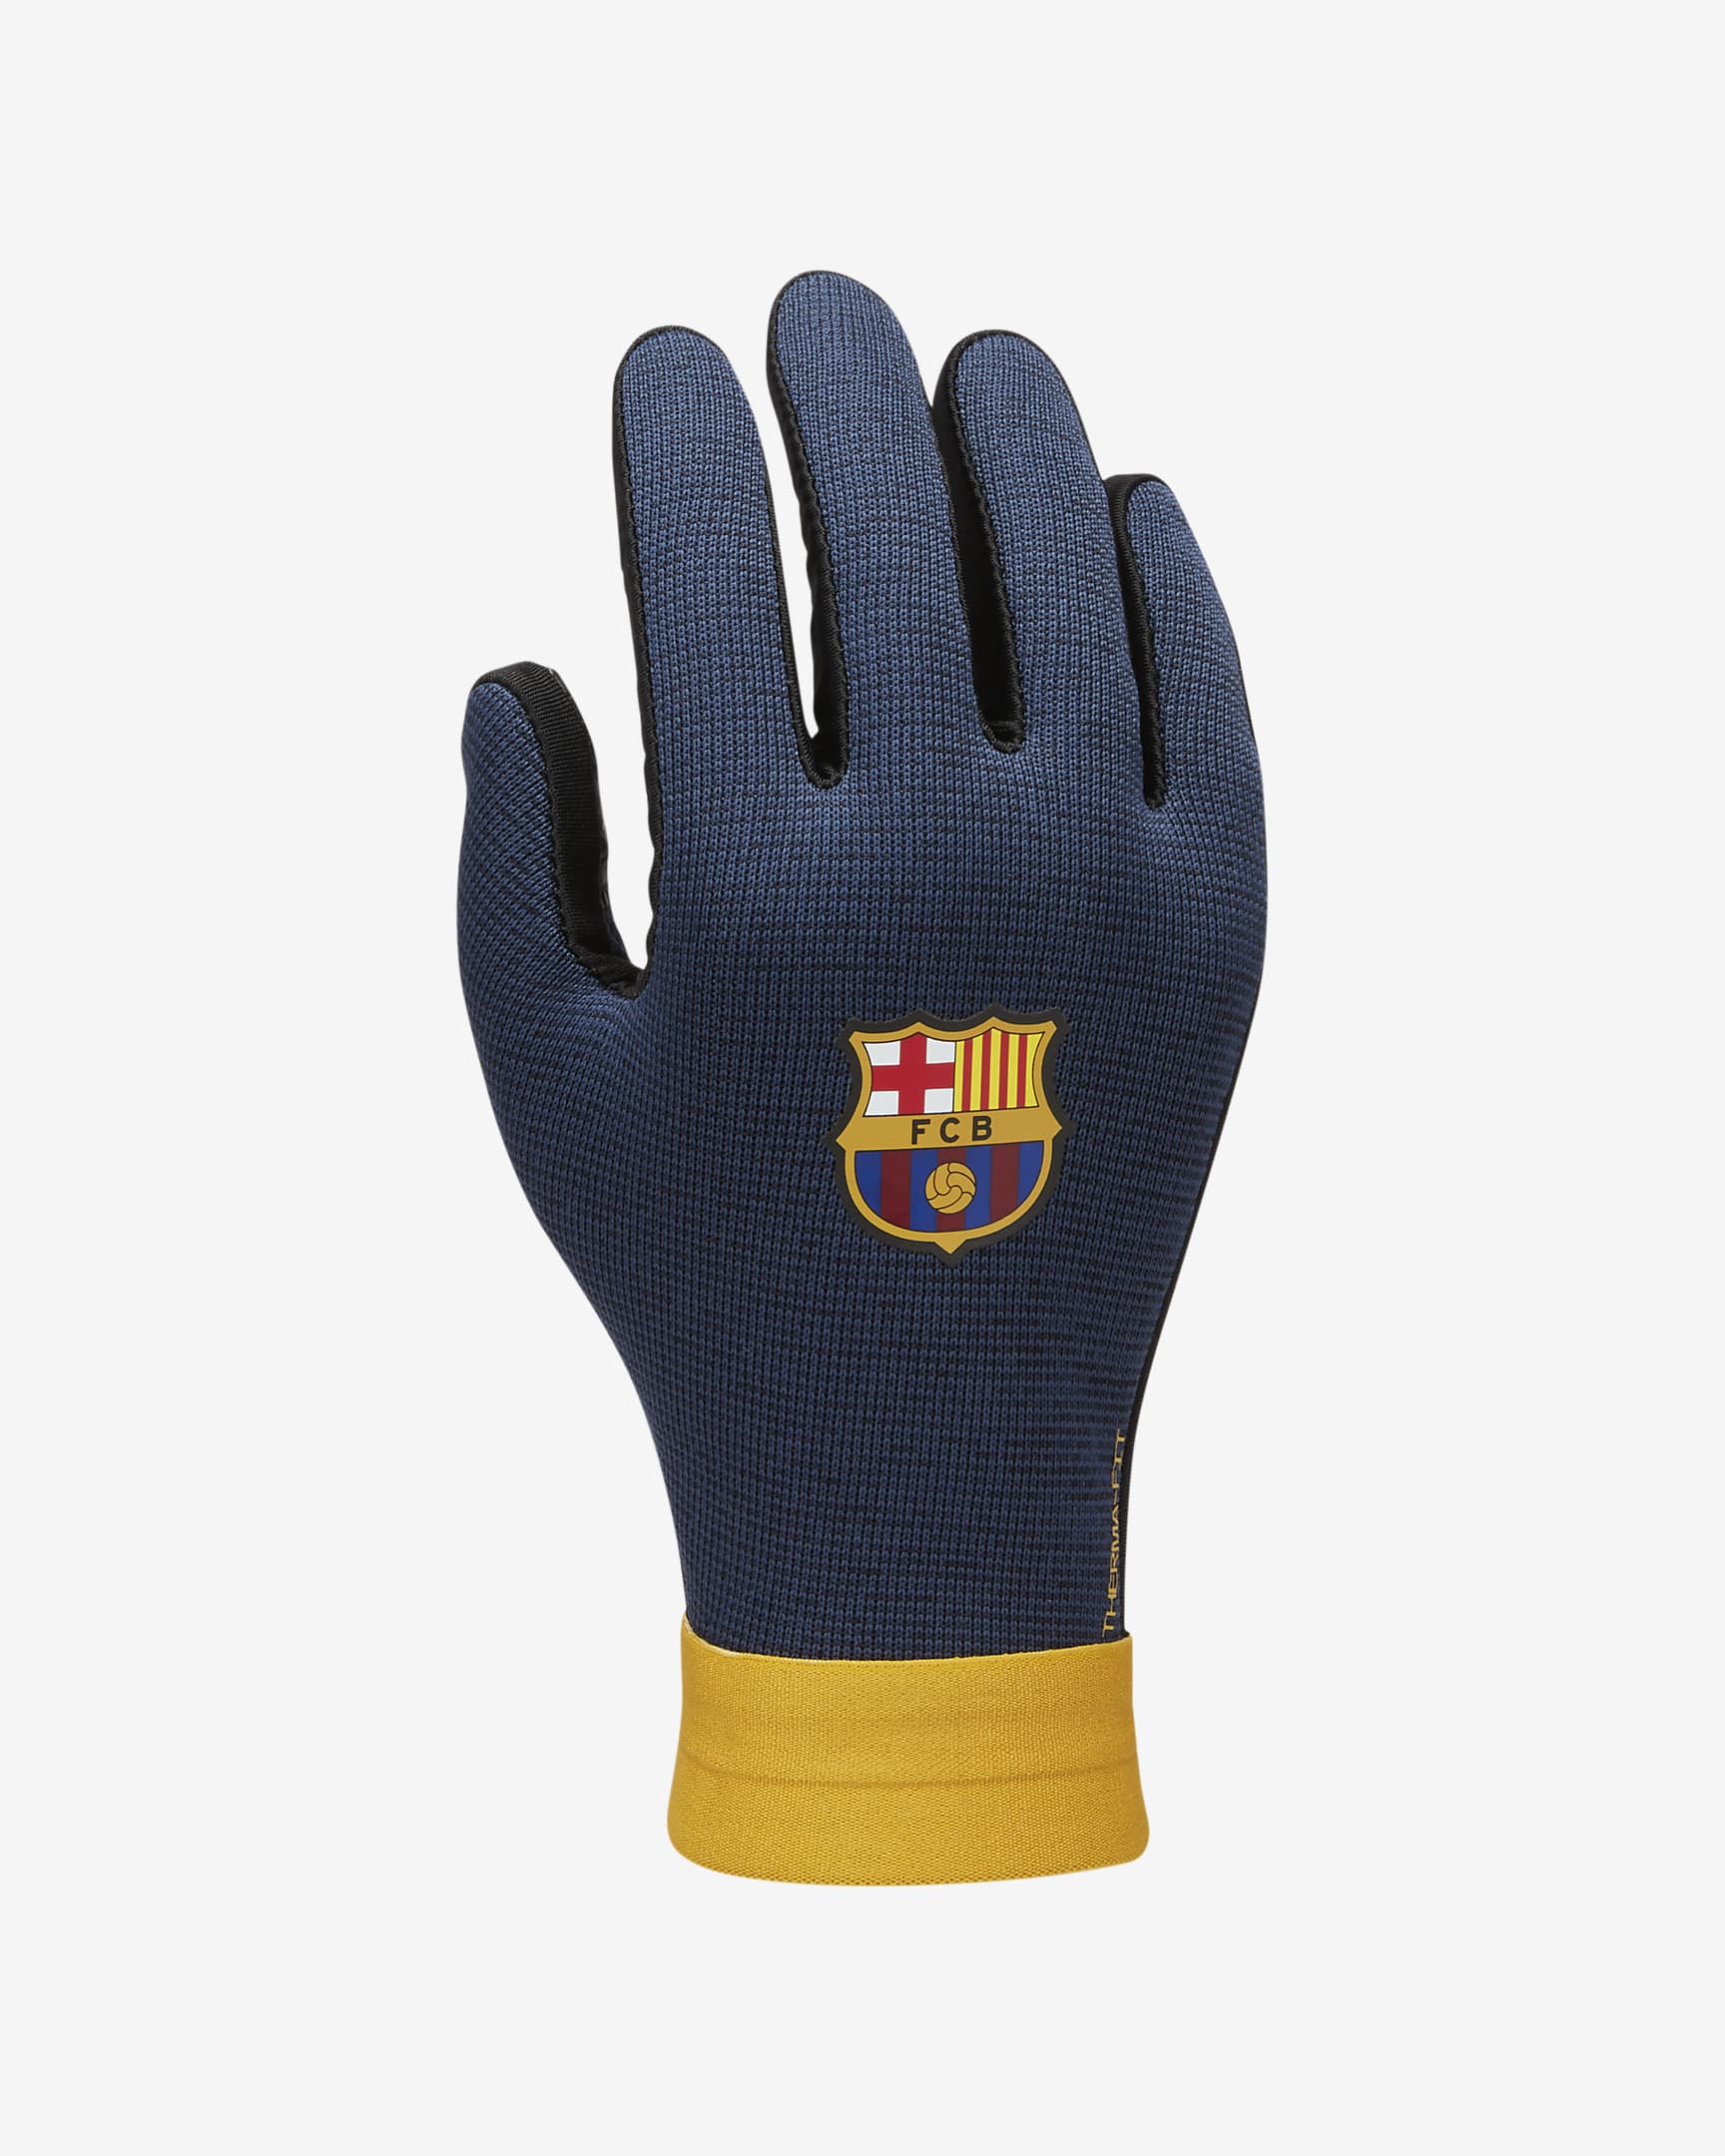 FC Barcelona Academy Nike Therma-FIT voetbalhandschoenen voor kids - Zwart/Midnight Navy/Chrome Yellow